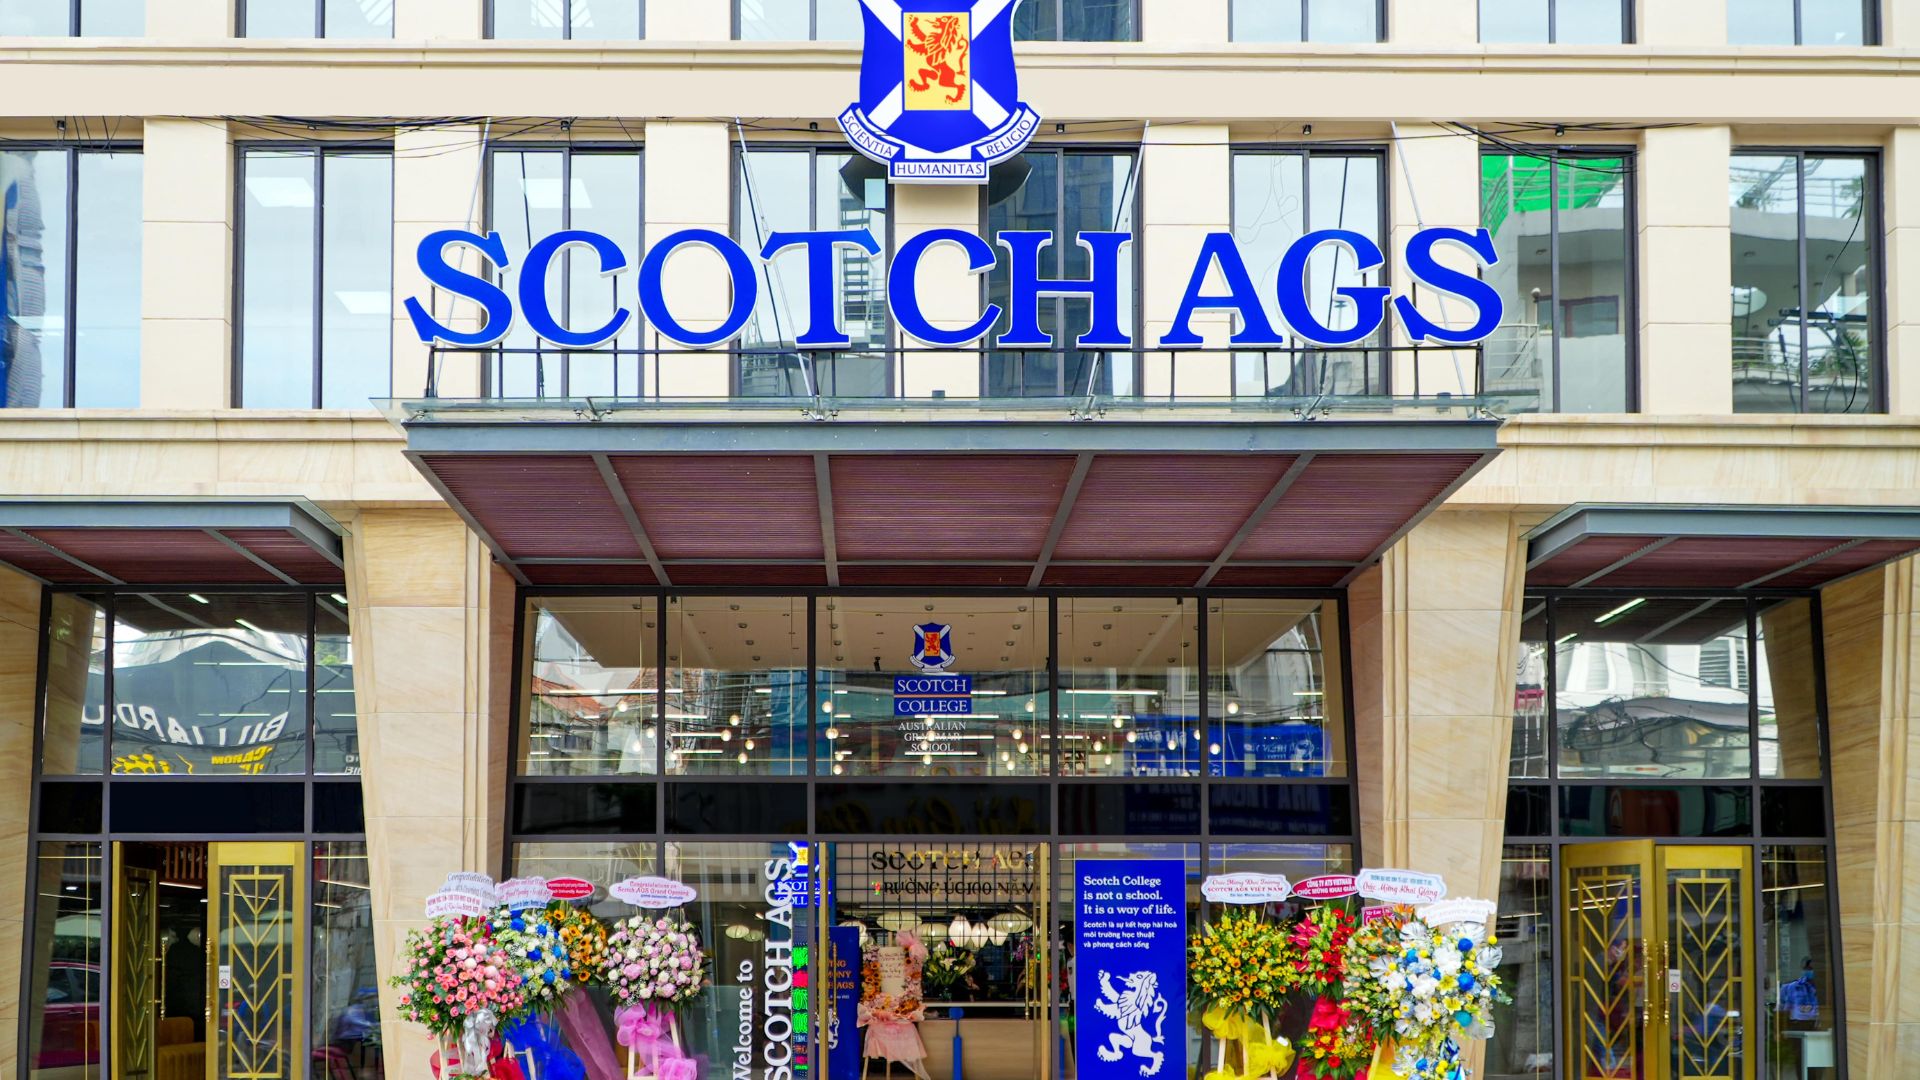 Scotch AGS cơ sở Trung tâm Sài Gòn